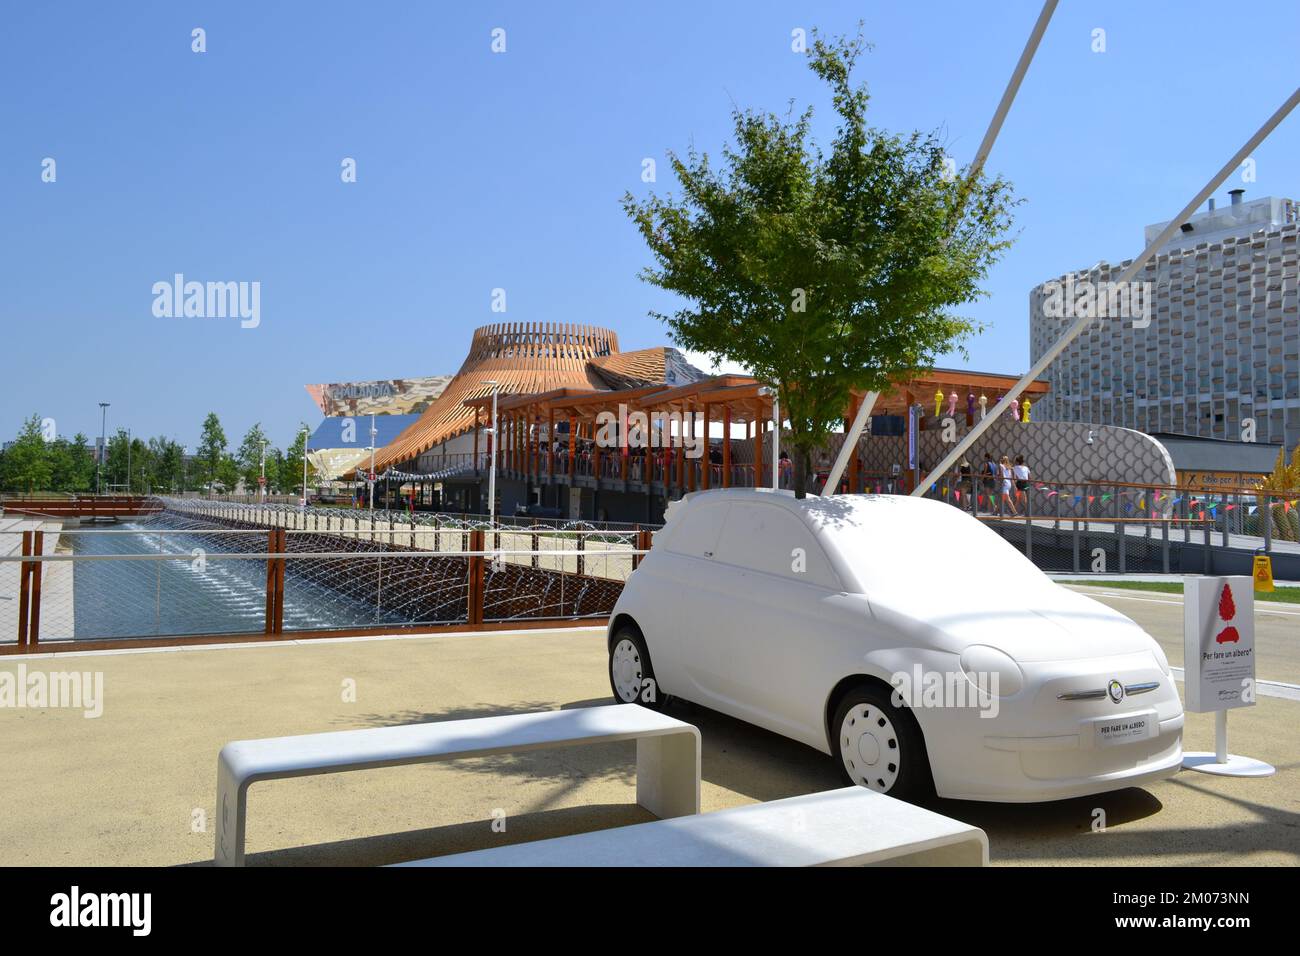 FIAT-Baum-Auto. Nahaufnahme des Modells des berühmten Fiat 500, das an einem sonnigen Tag auf der EXPO Milano 2015 einen 12 Meter hohen Birnenbaum beherbergt. Stockfoto